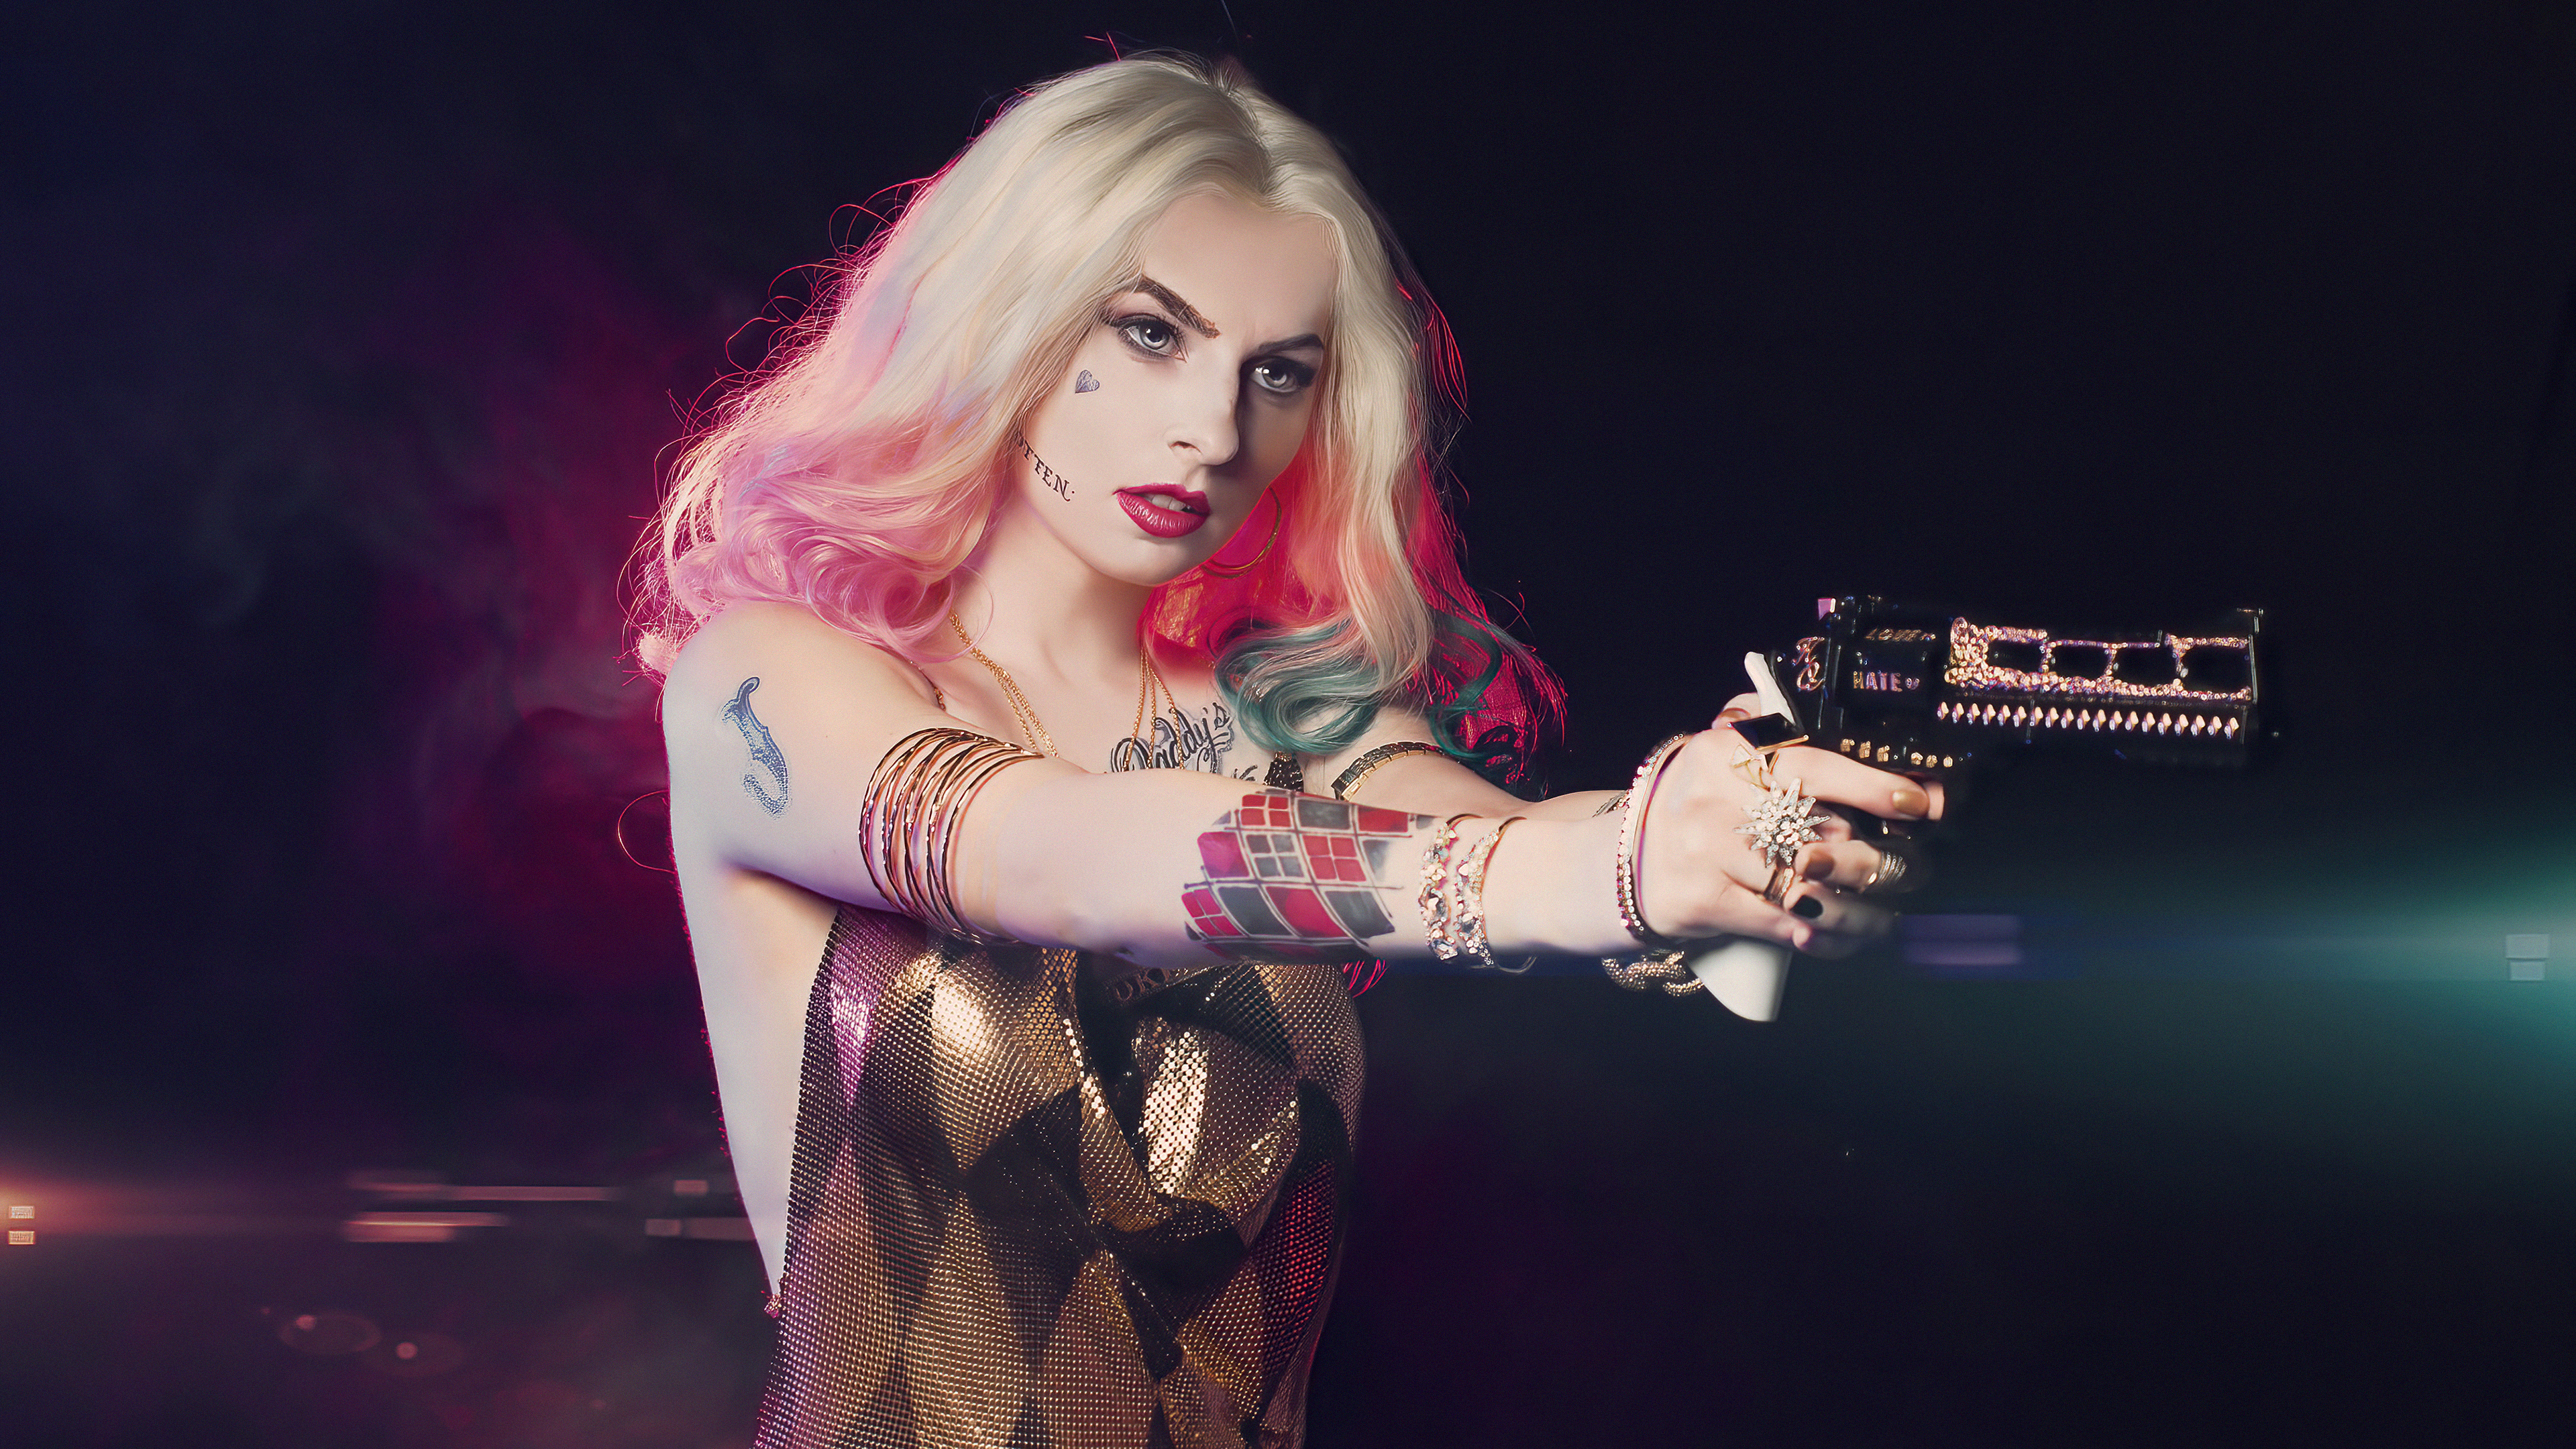 Fondos de pantalla Harley Quinn con armaCosplay